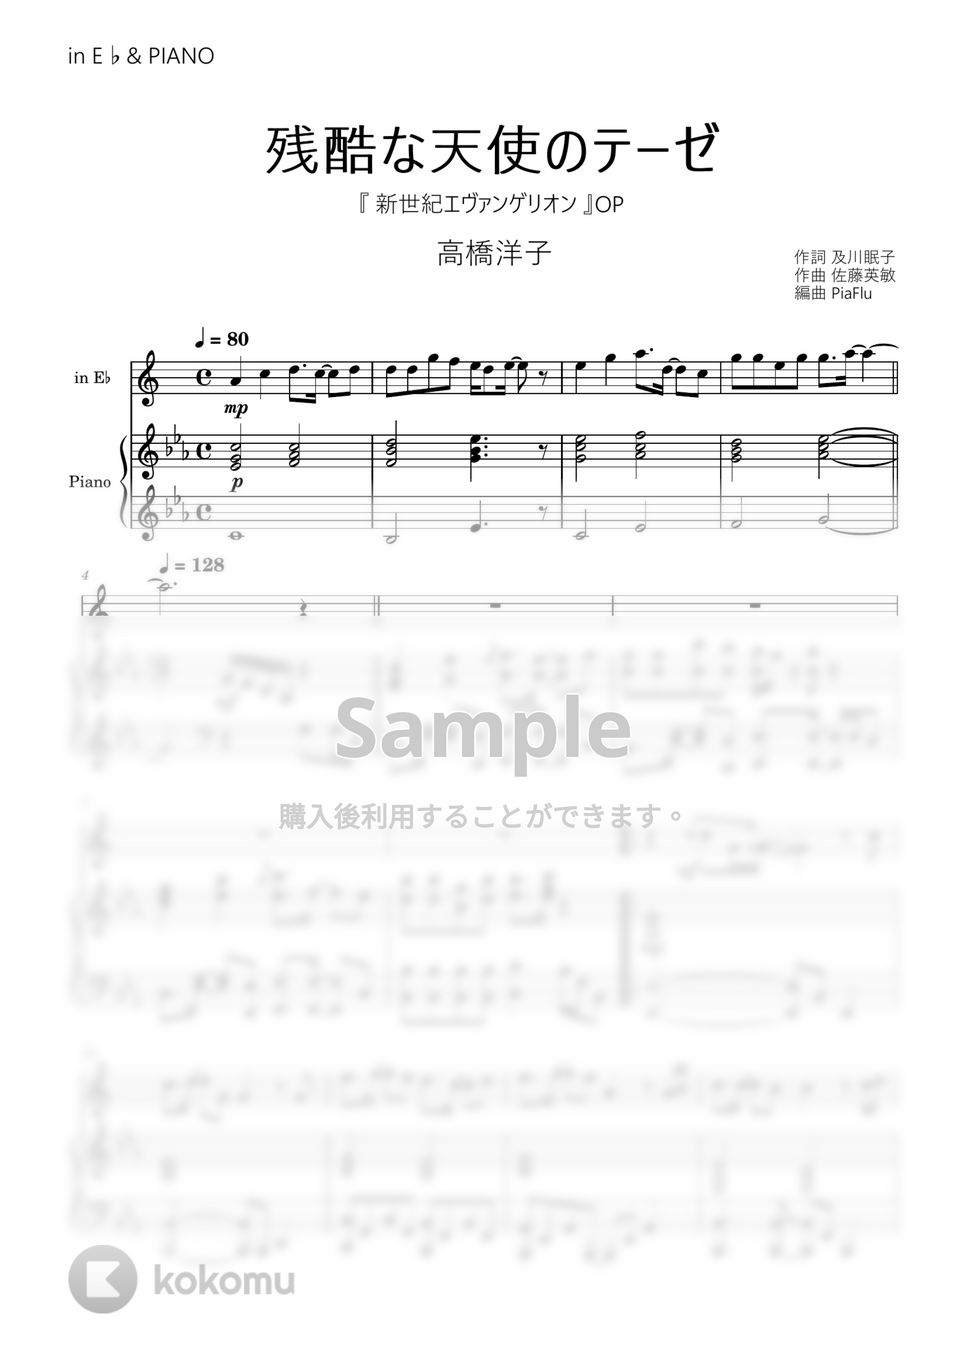 新世紀エヴァンゲリオン - 残酷な天使のテーゼ / 高橋洋子 (in E♭&ピアノ伴奏) by PiaFlu